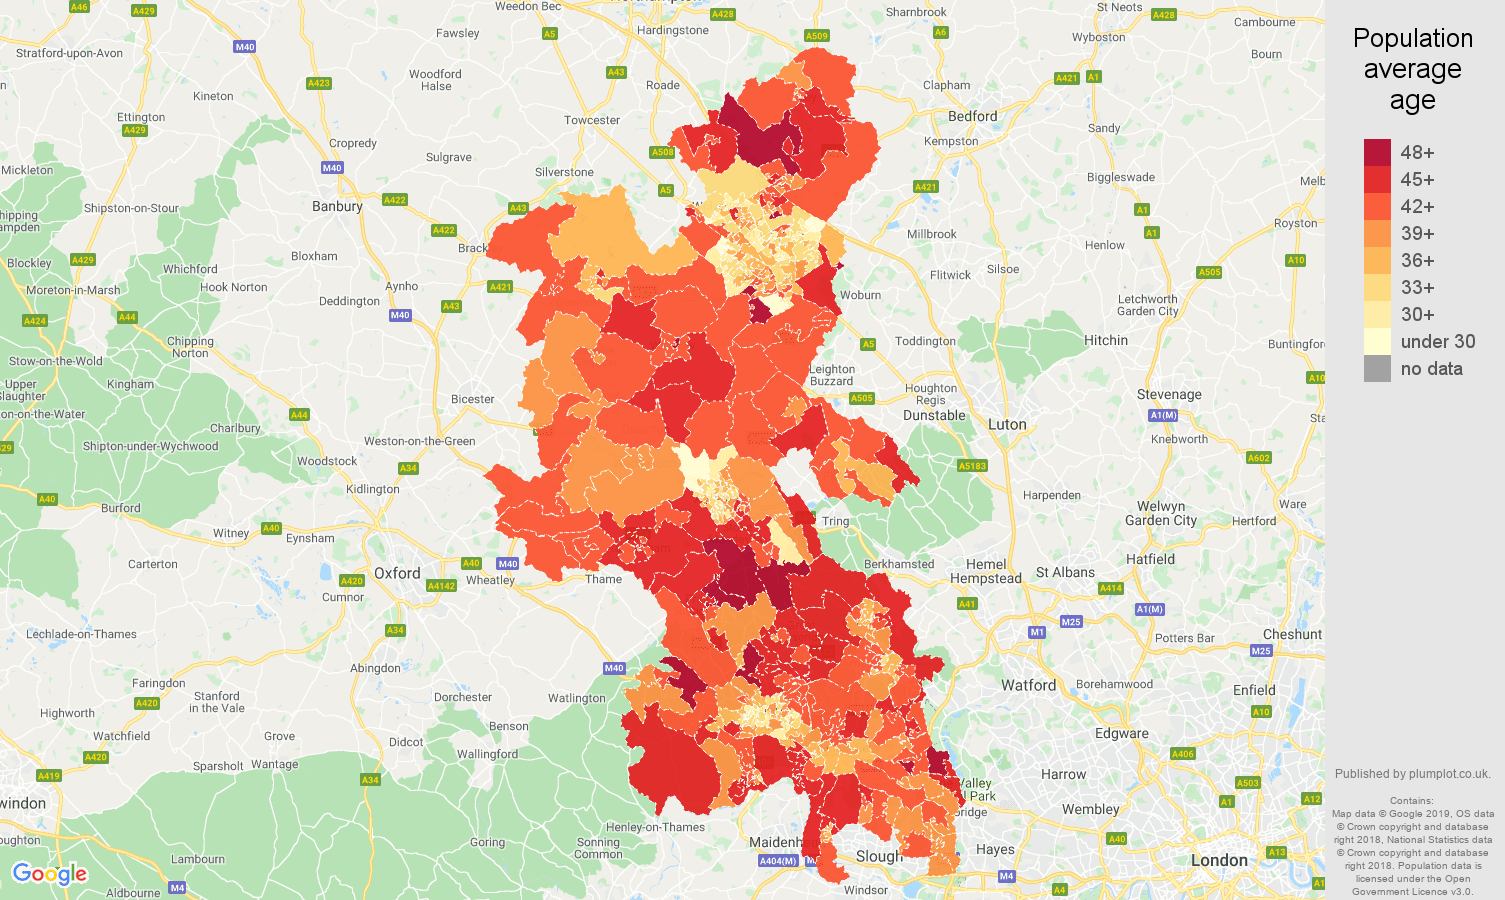 Buckinghamshire population average age map